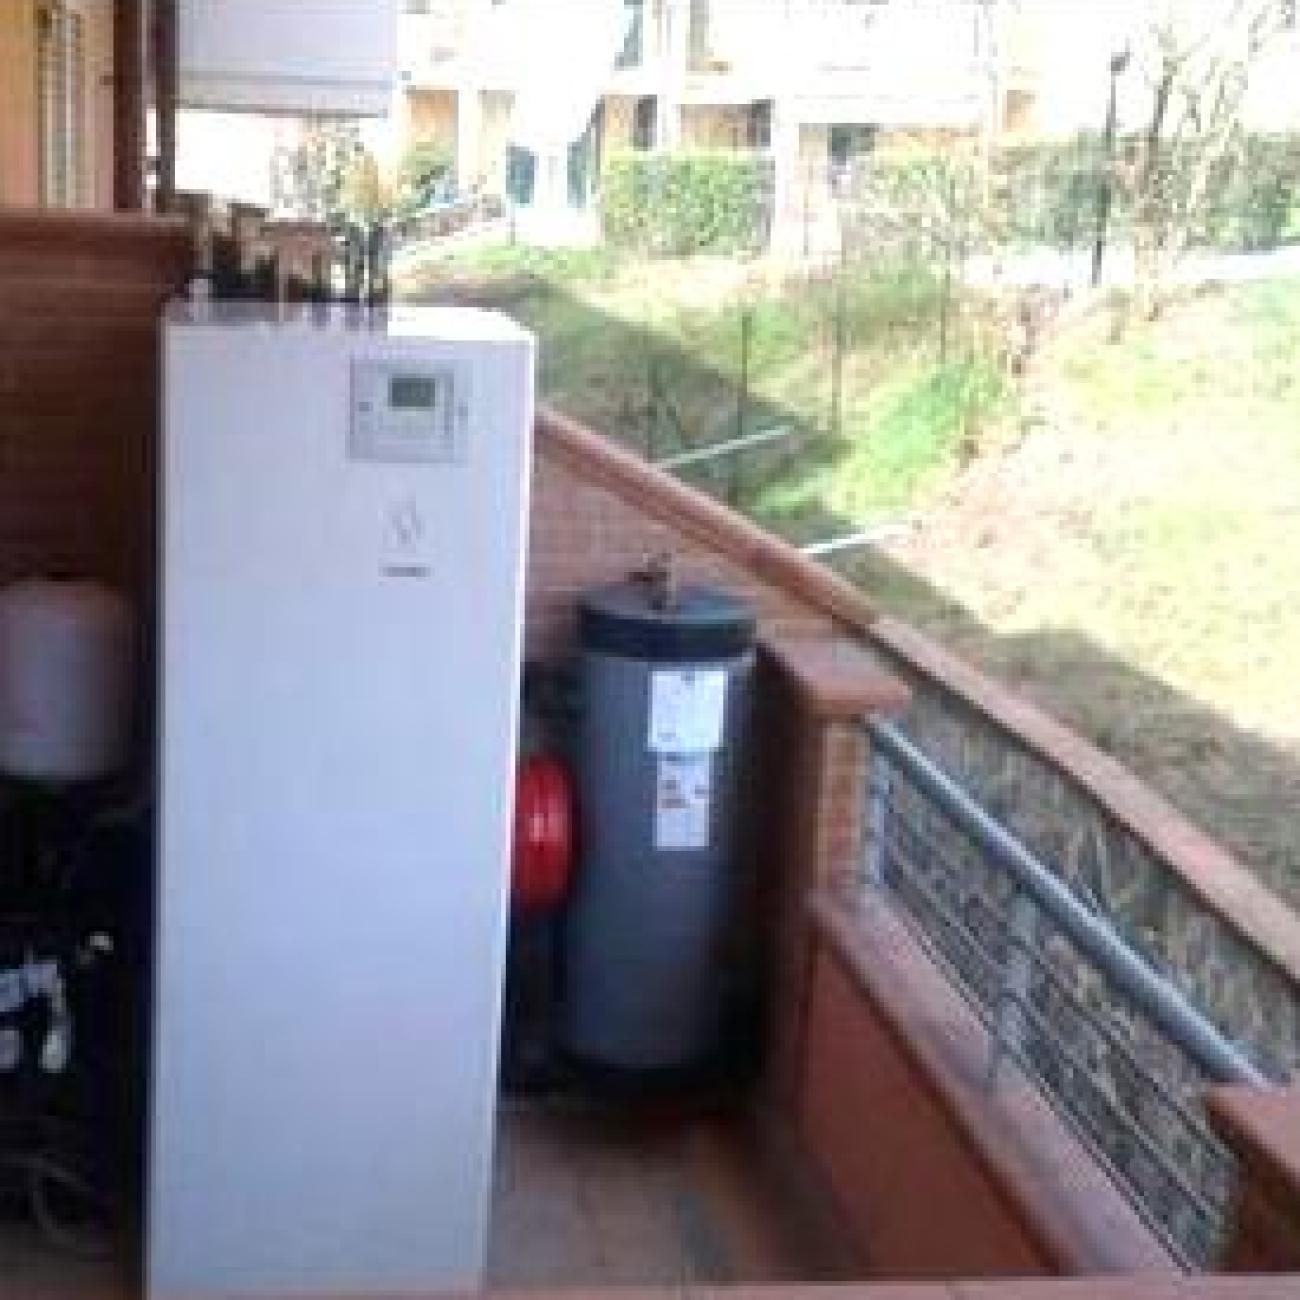 Installazione pompa di calore splittata per acqua sanitaria e riscaldamento 